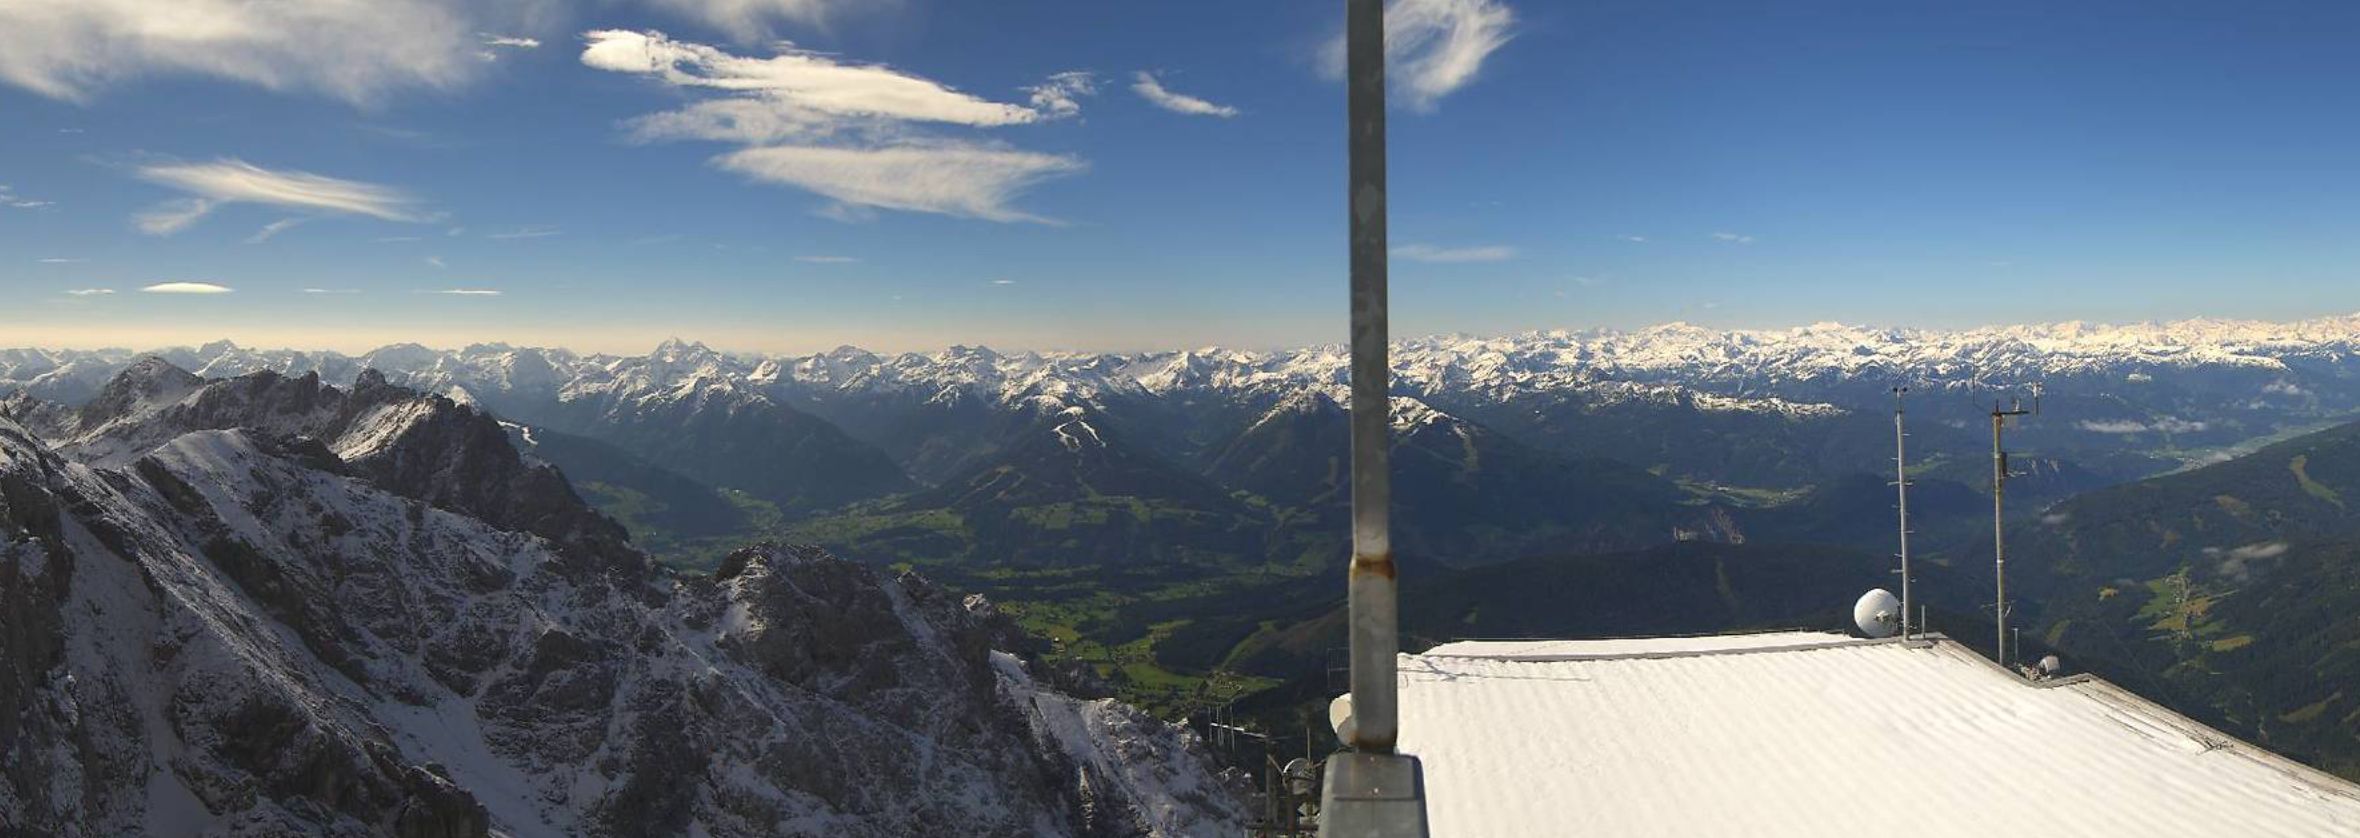 The view on a white main alpine ridge